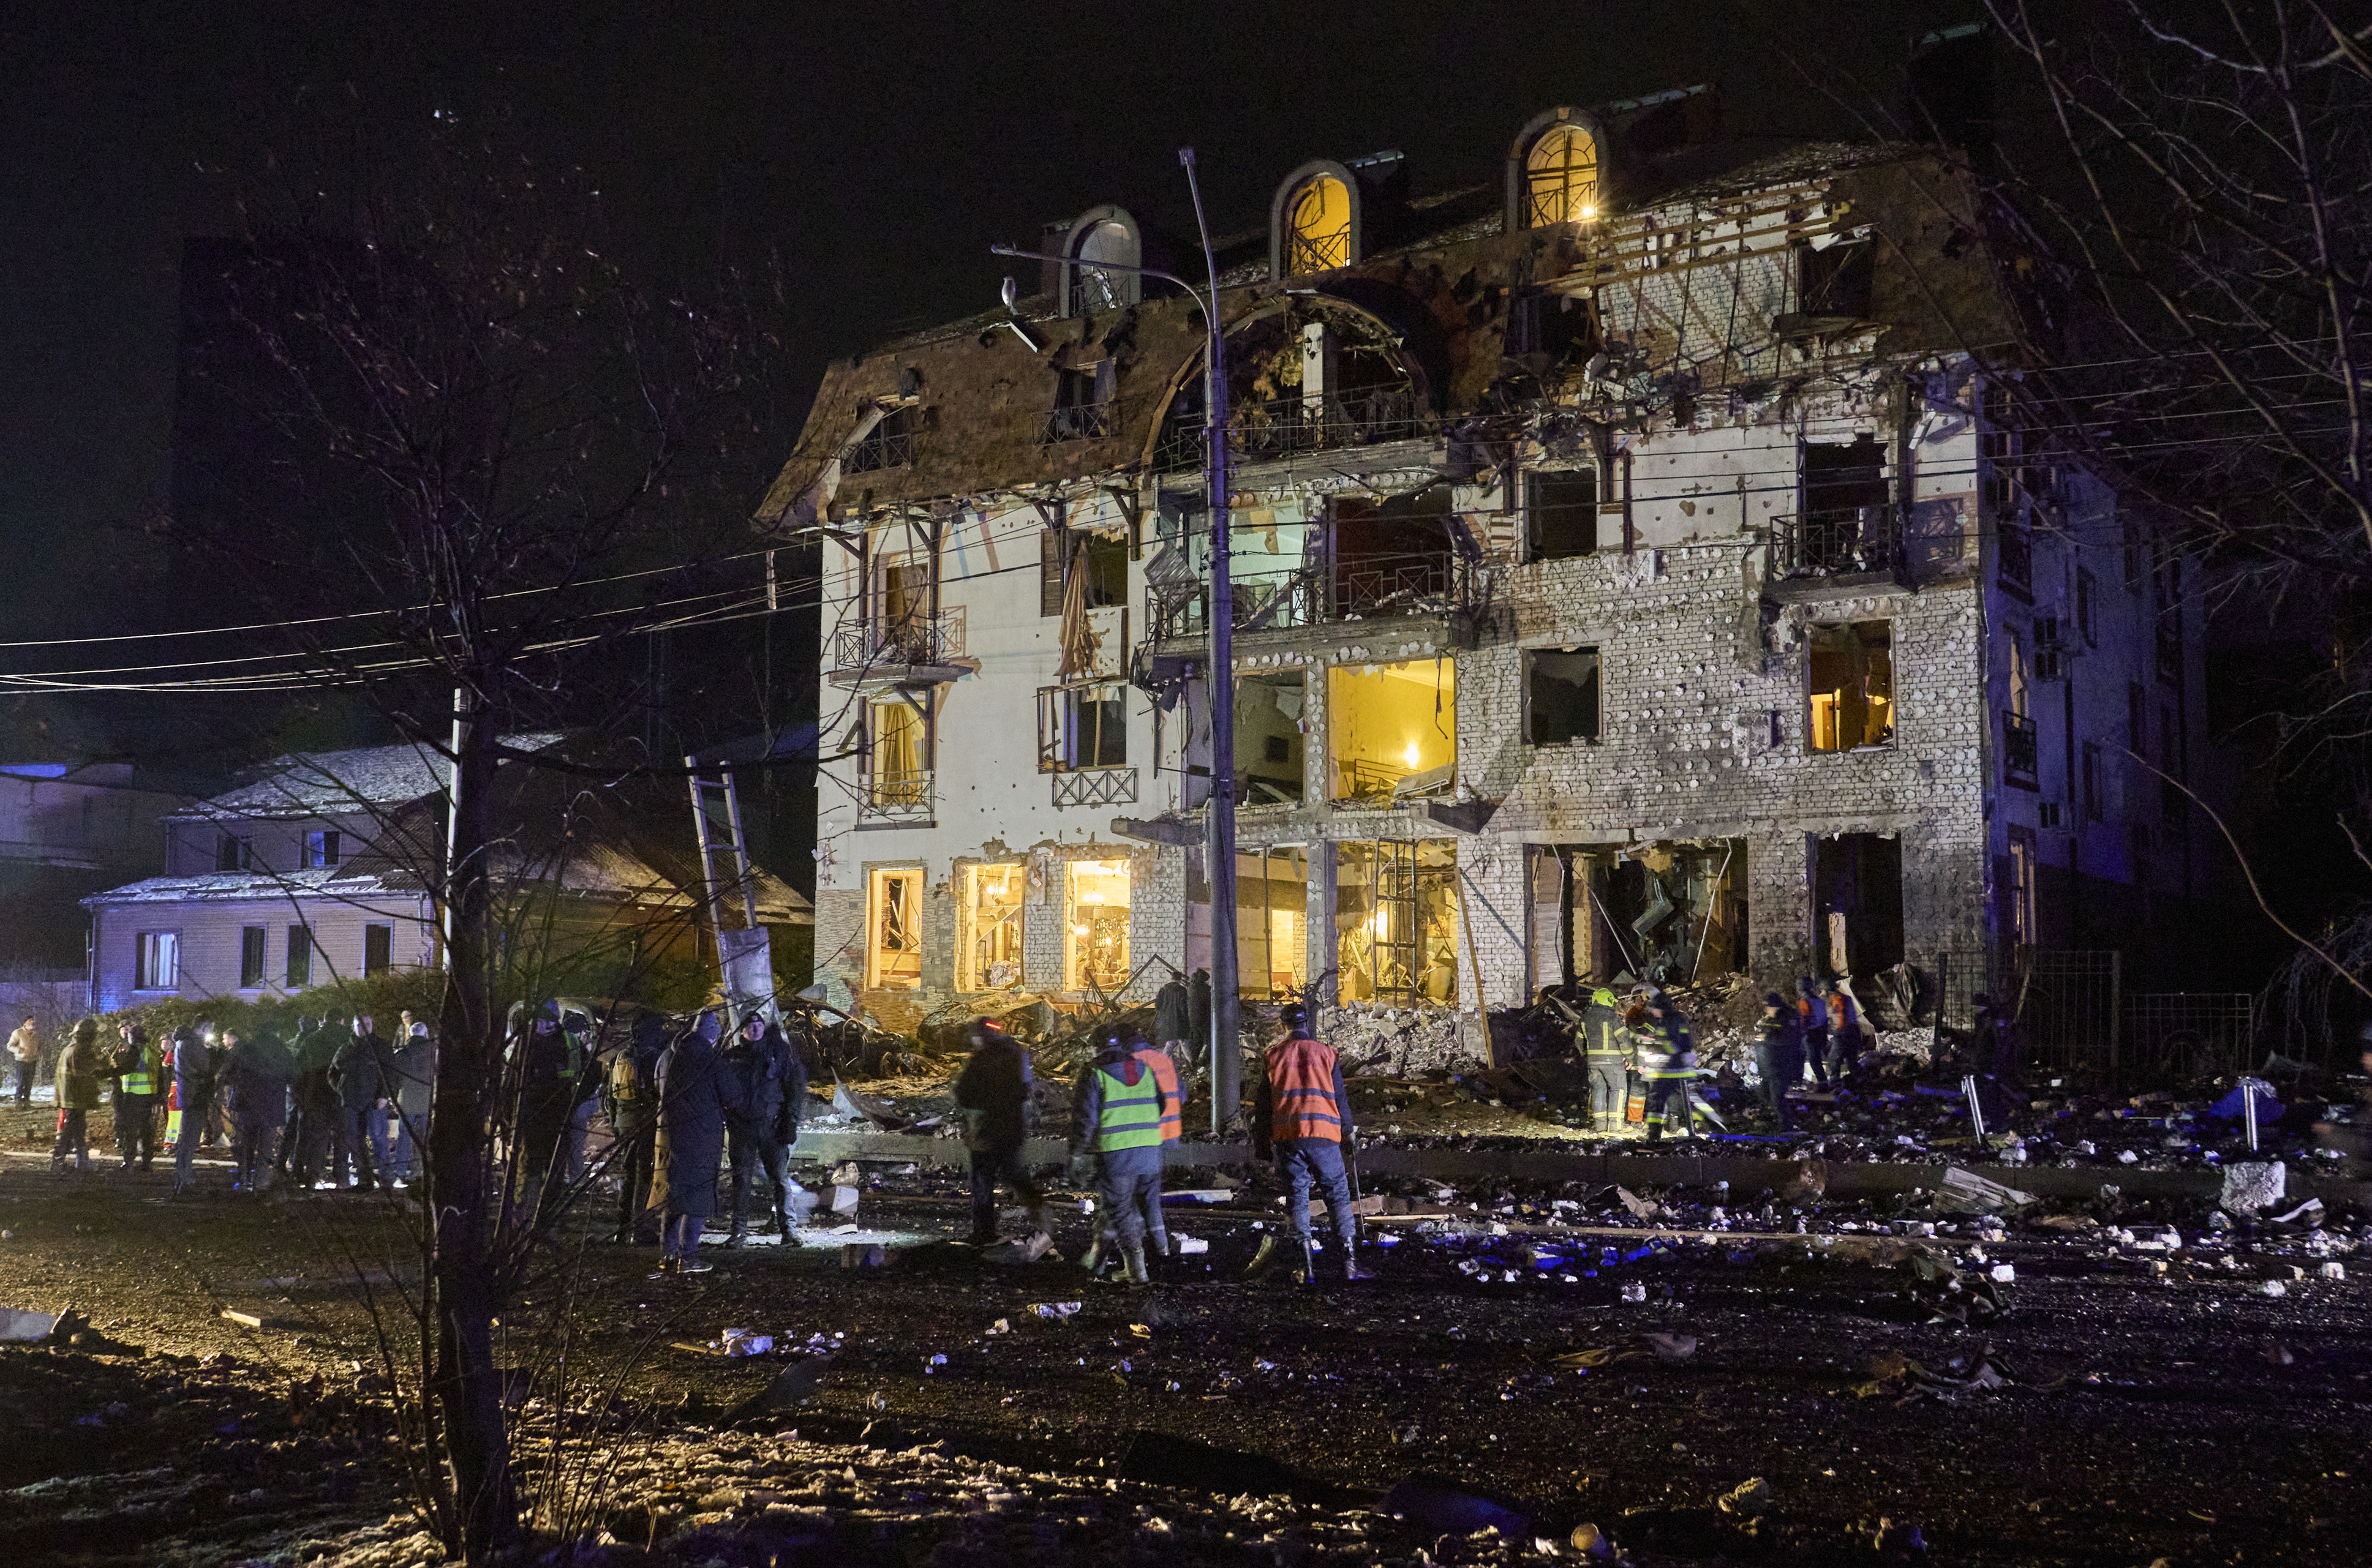 Nach dem Angriff lag das Hotel in verfallenden Ruinen zurück